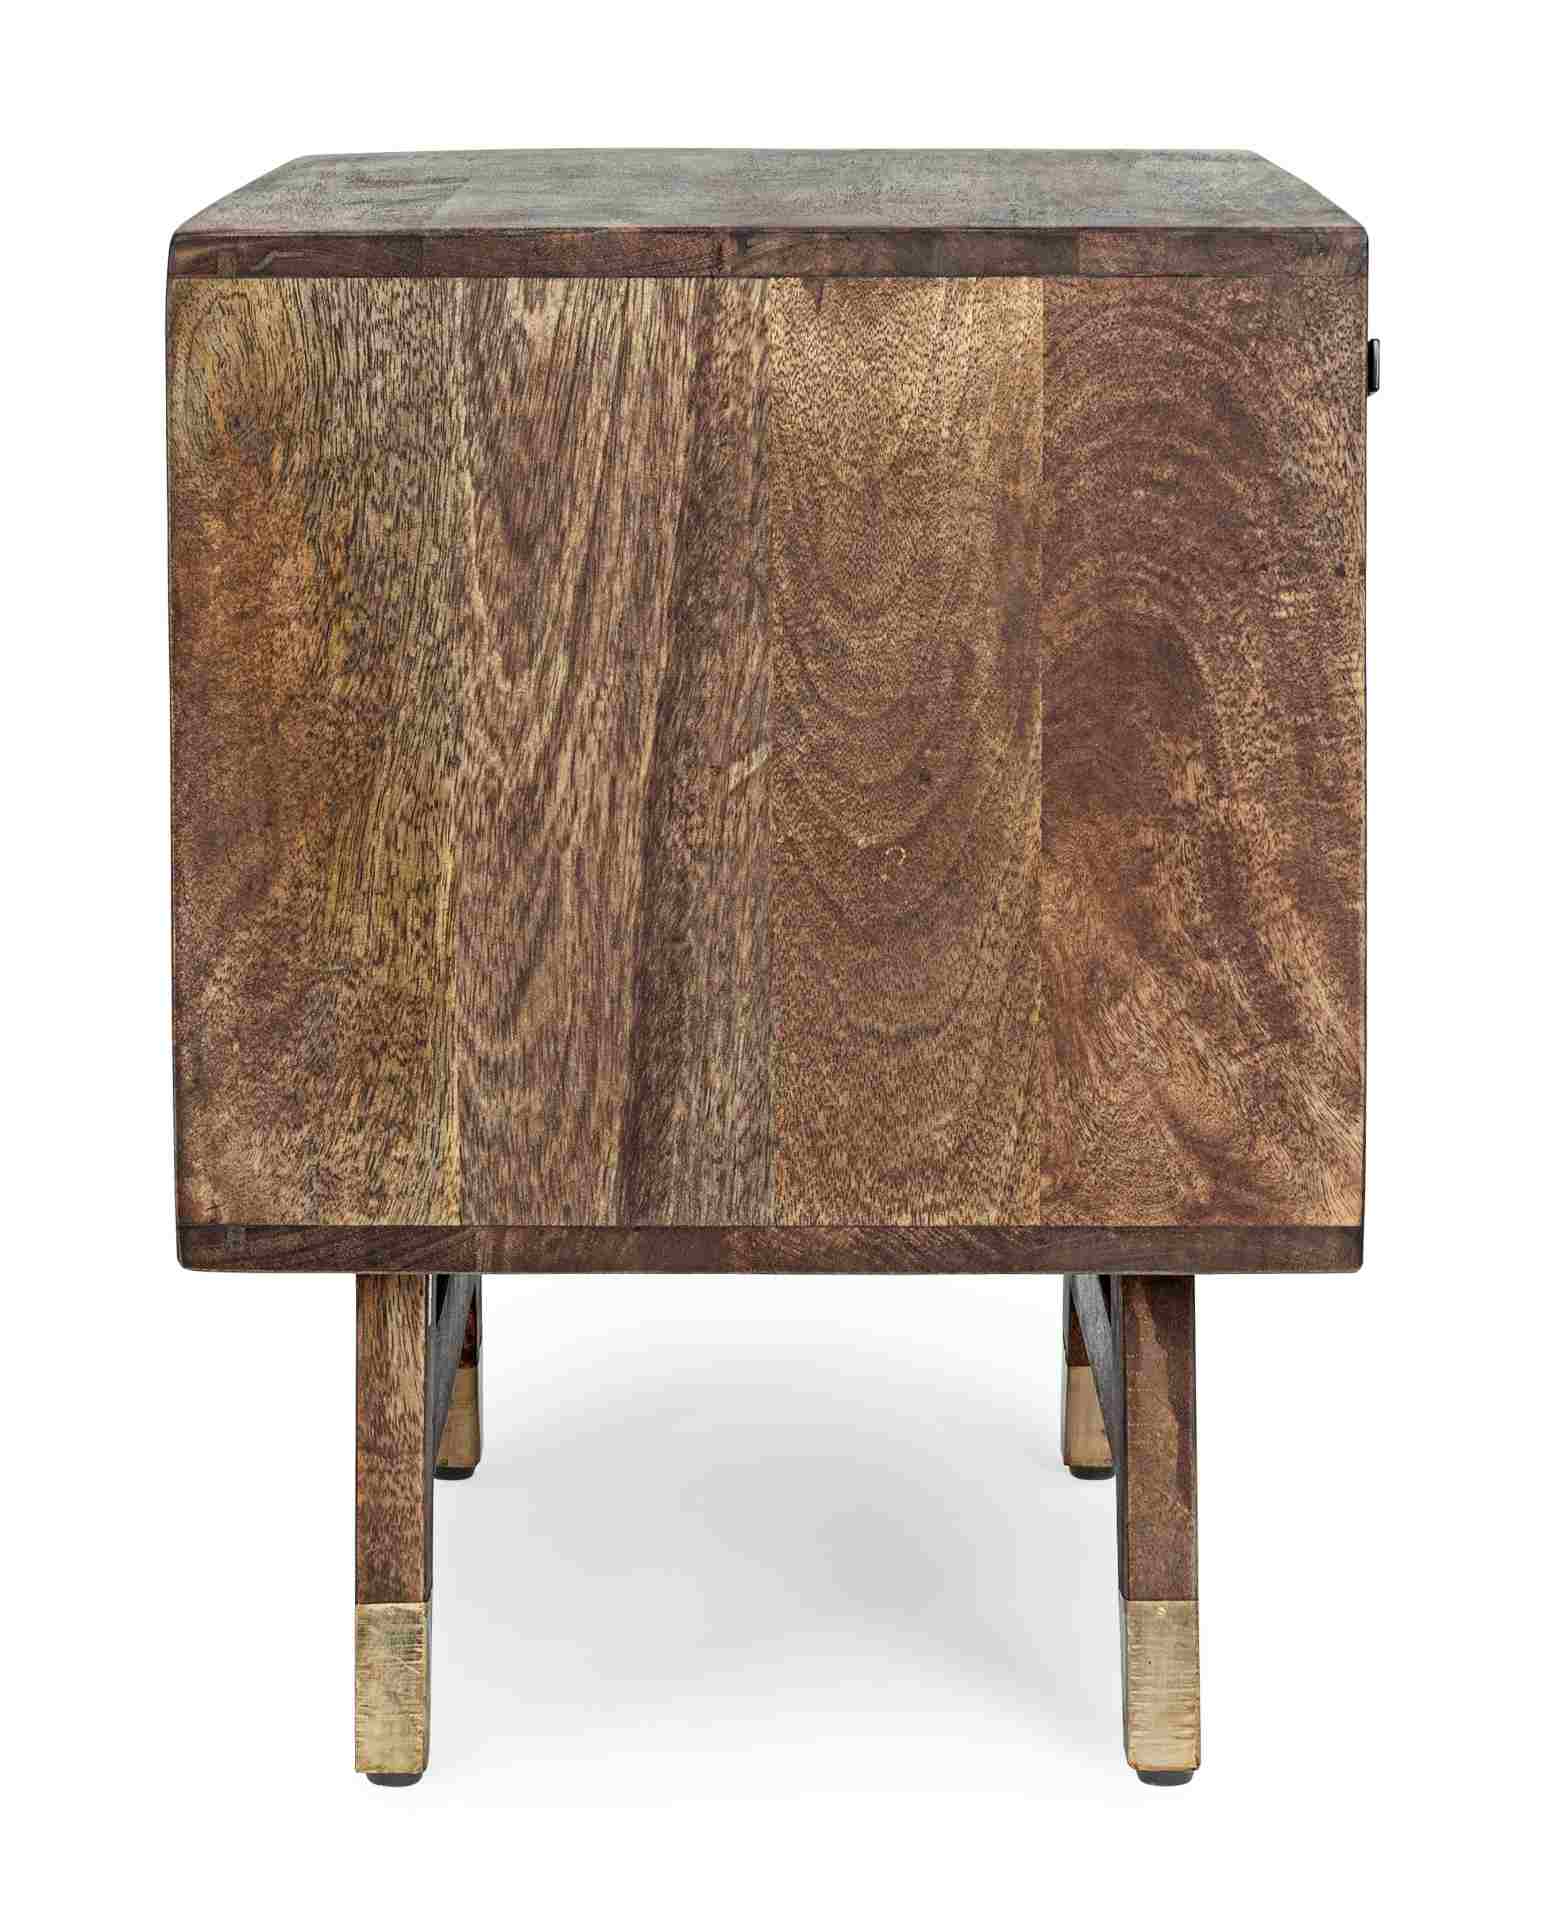 Der Nachttisch Dhaval überzeugt mit seinem klassischen Design. Gefertigt wurde er aus Mangoholz, welches einen natürlichen Farbton besitzt. Das Gestell ist auch aus Mangoholz. Der Nachttisch verfügt über zwei Schubladen und zwei Türen. Die Breite beträgt 